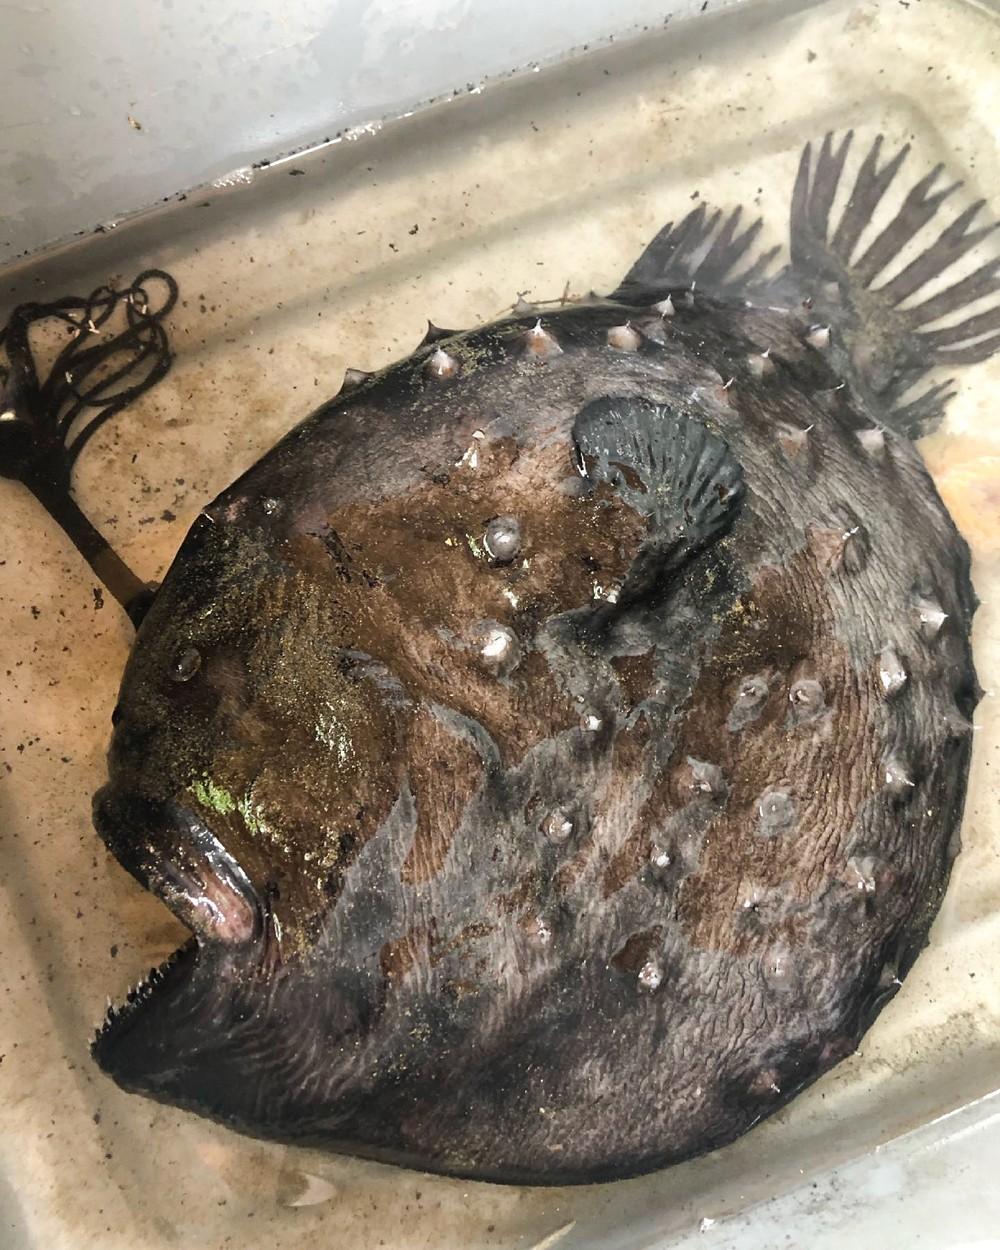 Un peşte din specia Pacific Football a fost găsit pe o plajă din California, având gura deschisă